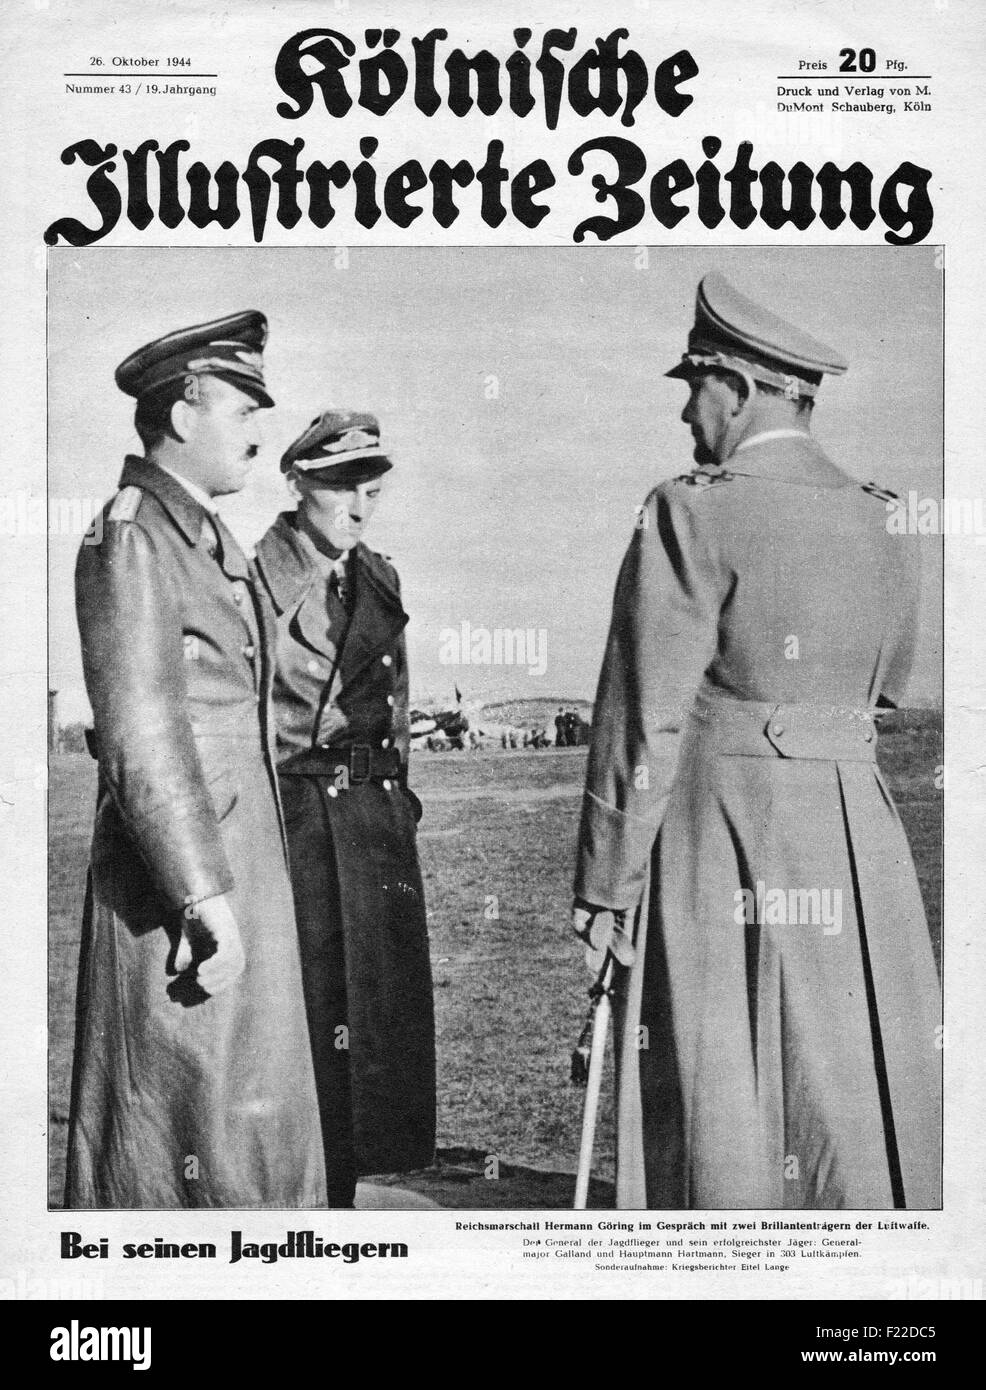 1944 Kolnischer Illustrierte Zeitung pagina anteriore che mostra Reichsmarschall Hermann Goering & General-Major Adolf Galland Foto Stock